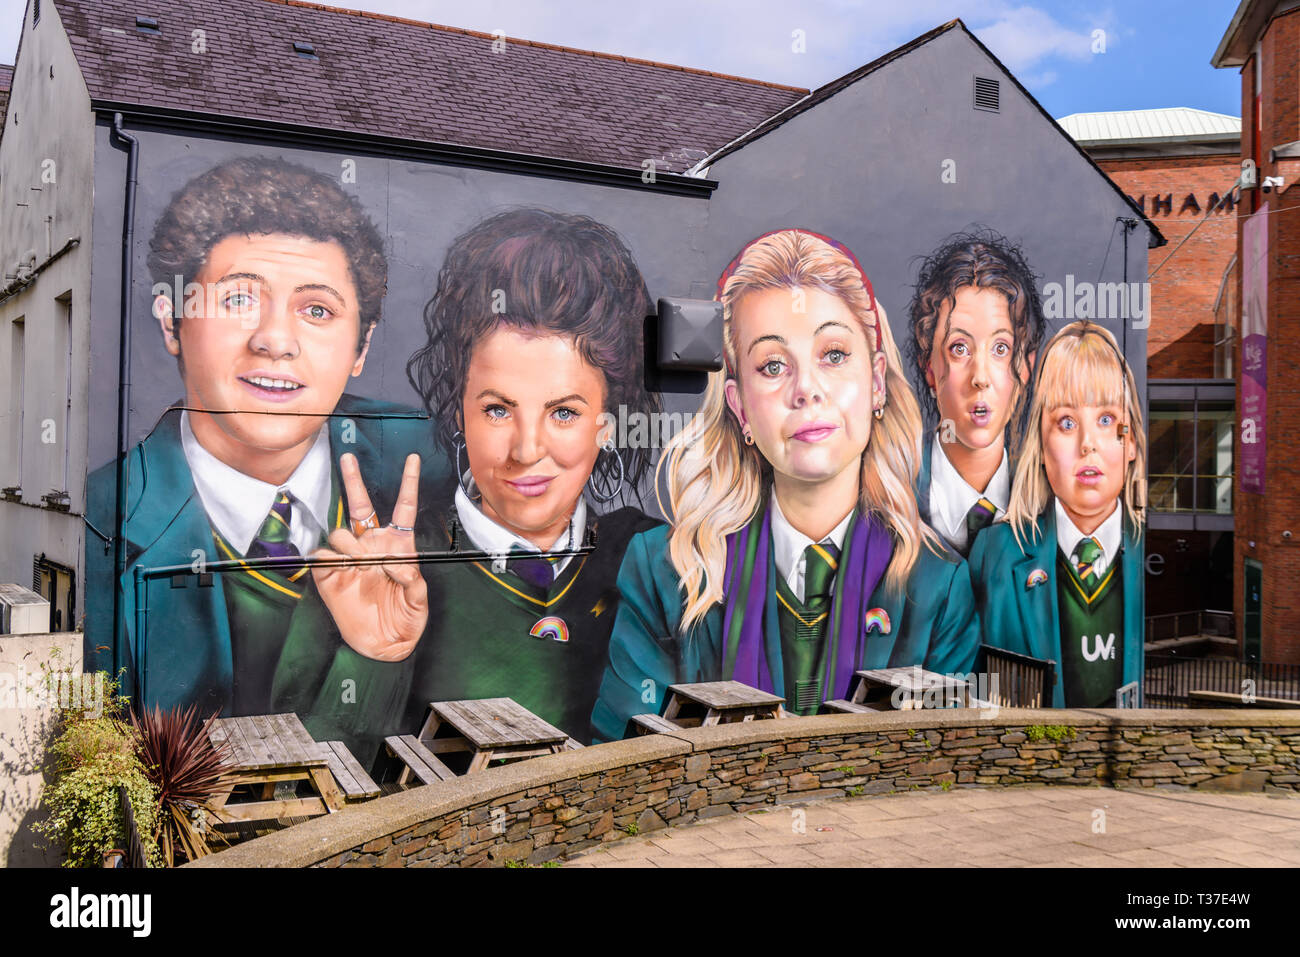 Wandbild mit den wichtigsten Charakteren aus dem Kanal 4 TV-Serie "fröhliche Mädchen an der Wand des Dachses Pub, Derry, Londonderry, nördlichen Ire Stockfoto